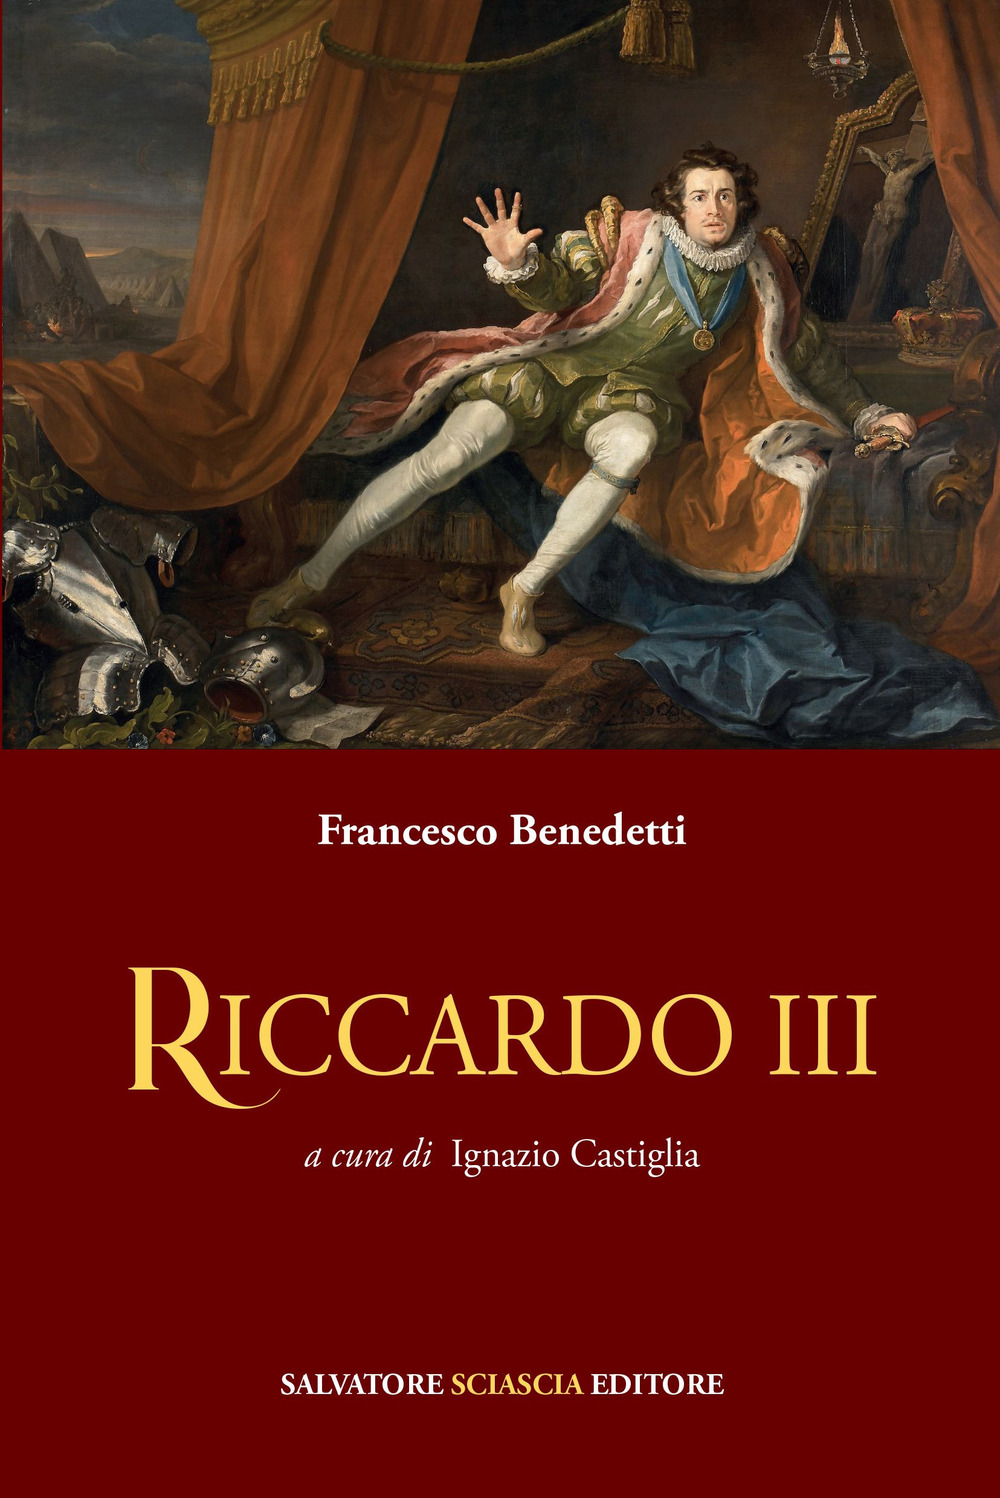 Libri Francesco Benedetti - Riccardo III NUOVO SIGILLATO, EDIZIONE DEL 14/06/2022 SUBITO DISPONIBILE